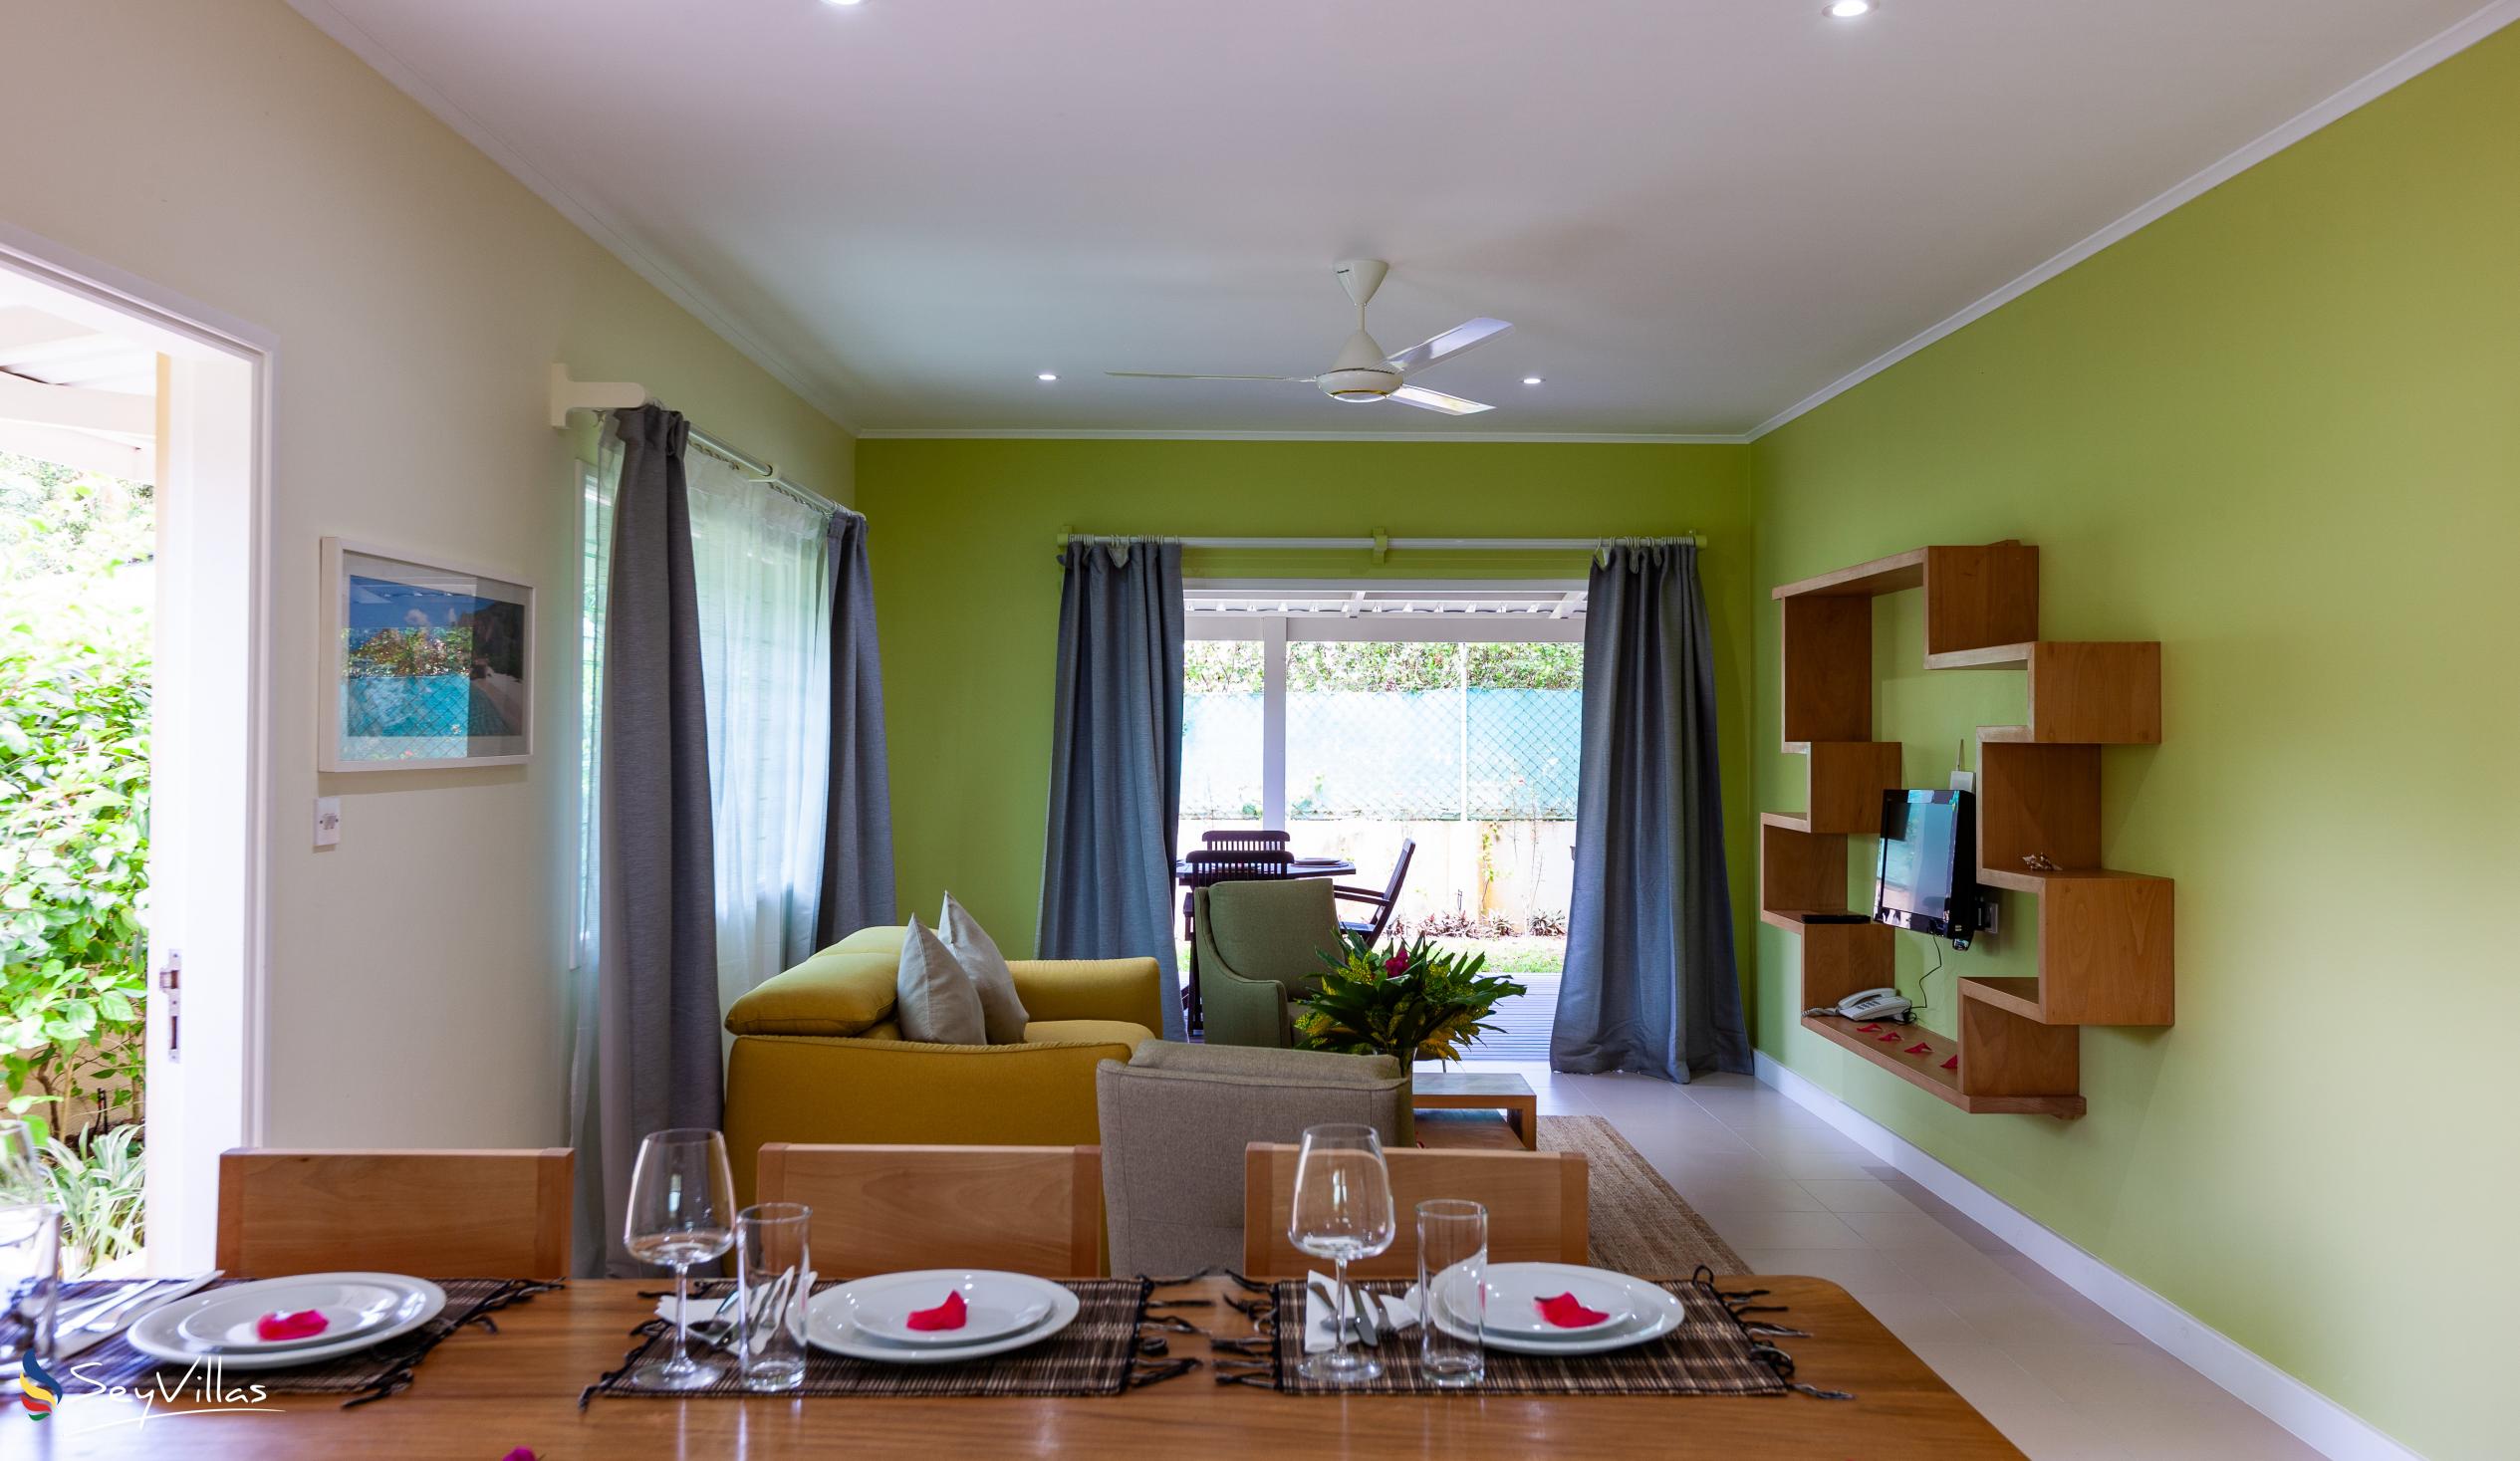 Foto 33: Residence Praslinoise - Familienappartement mit 2 Schlafzimmern (EG) - Praslin (Seychellen)